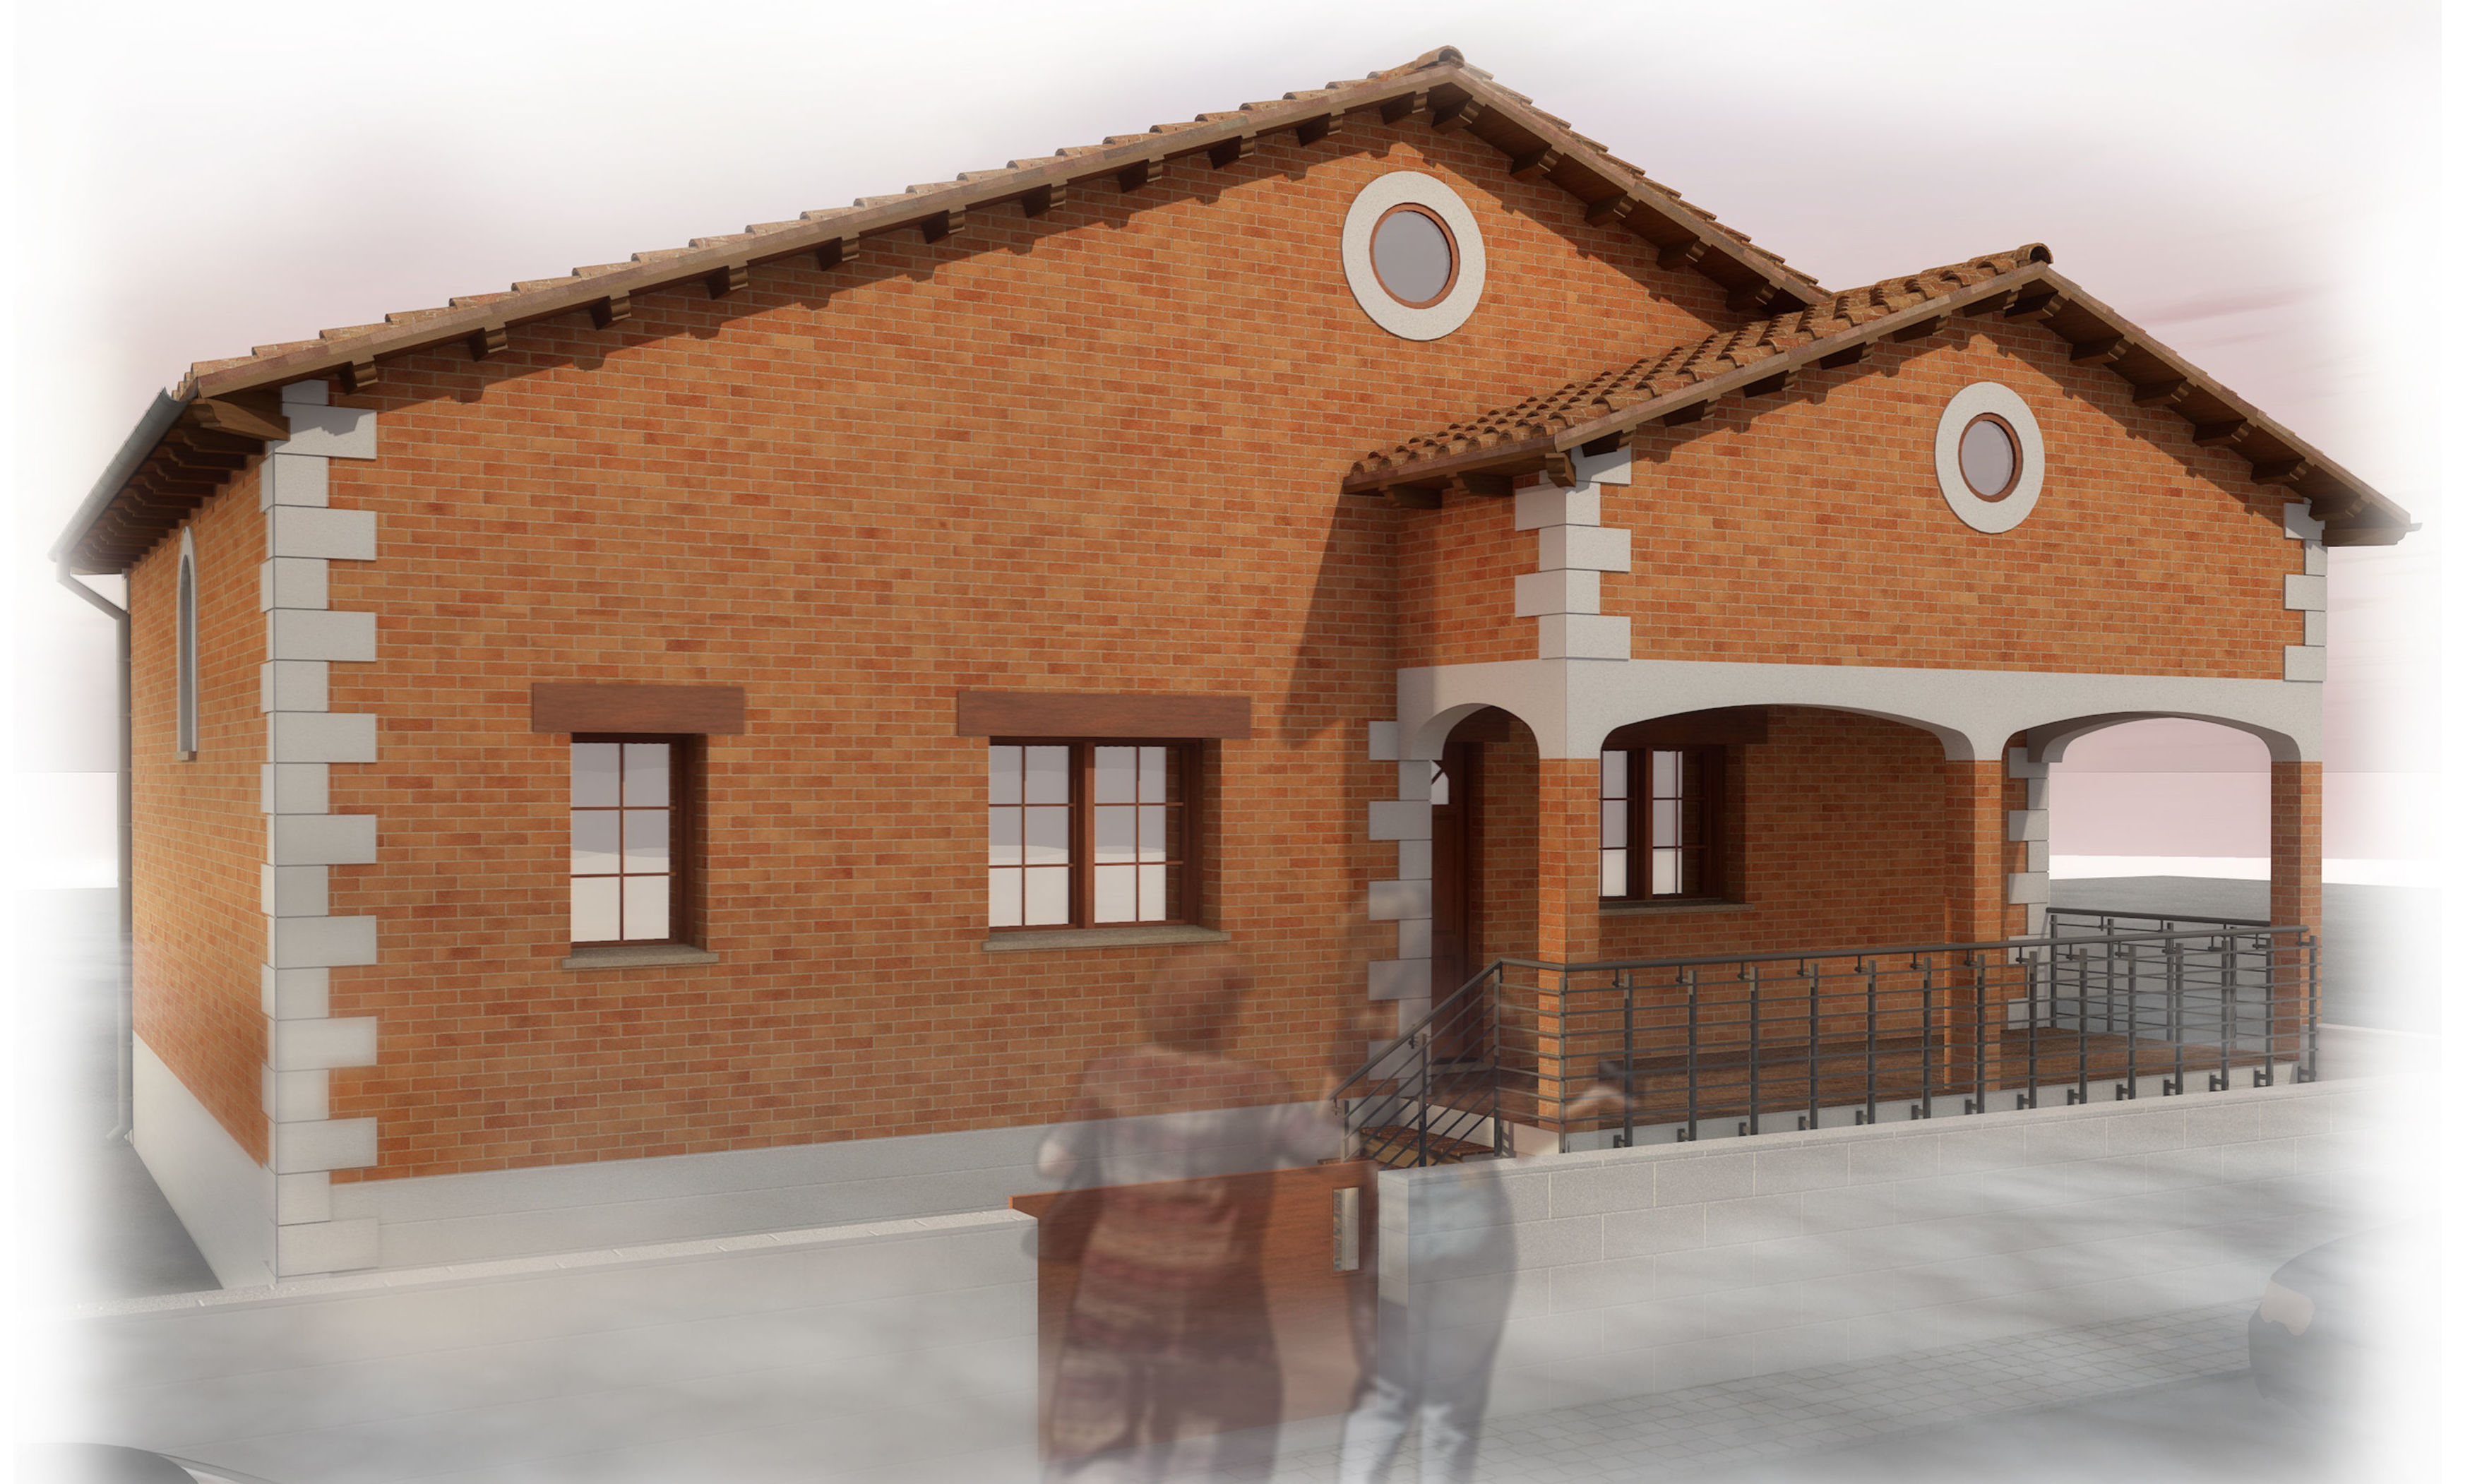 Vivienda Unifamiliar Aislada en Papatrigo, -Ávila-: Trabajos realizados de José Díaz, Arquitectos